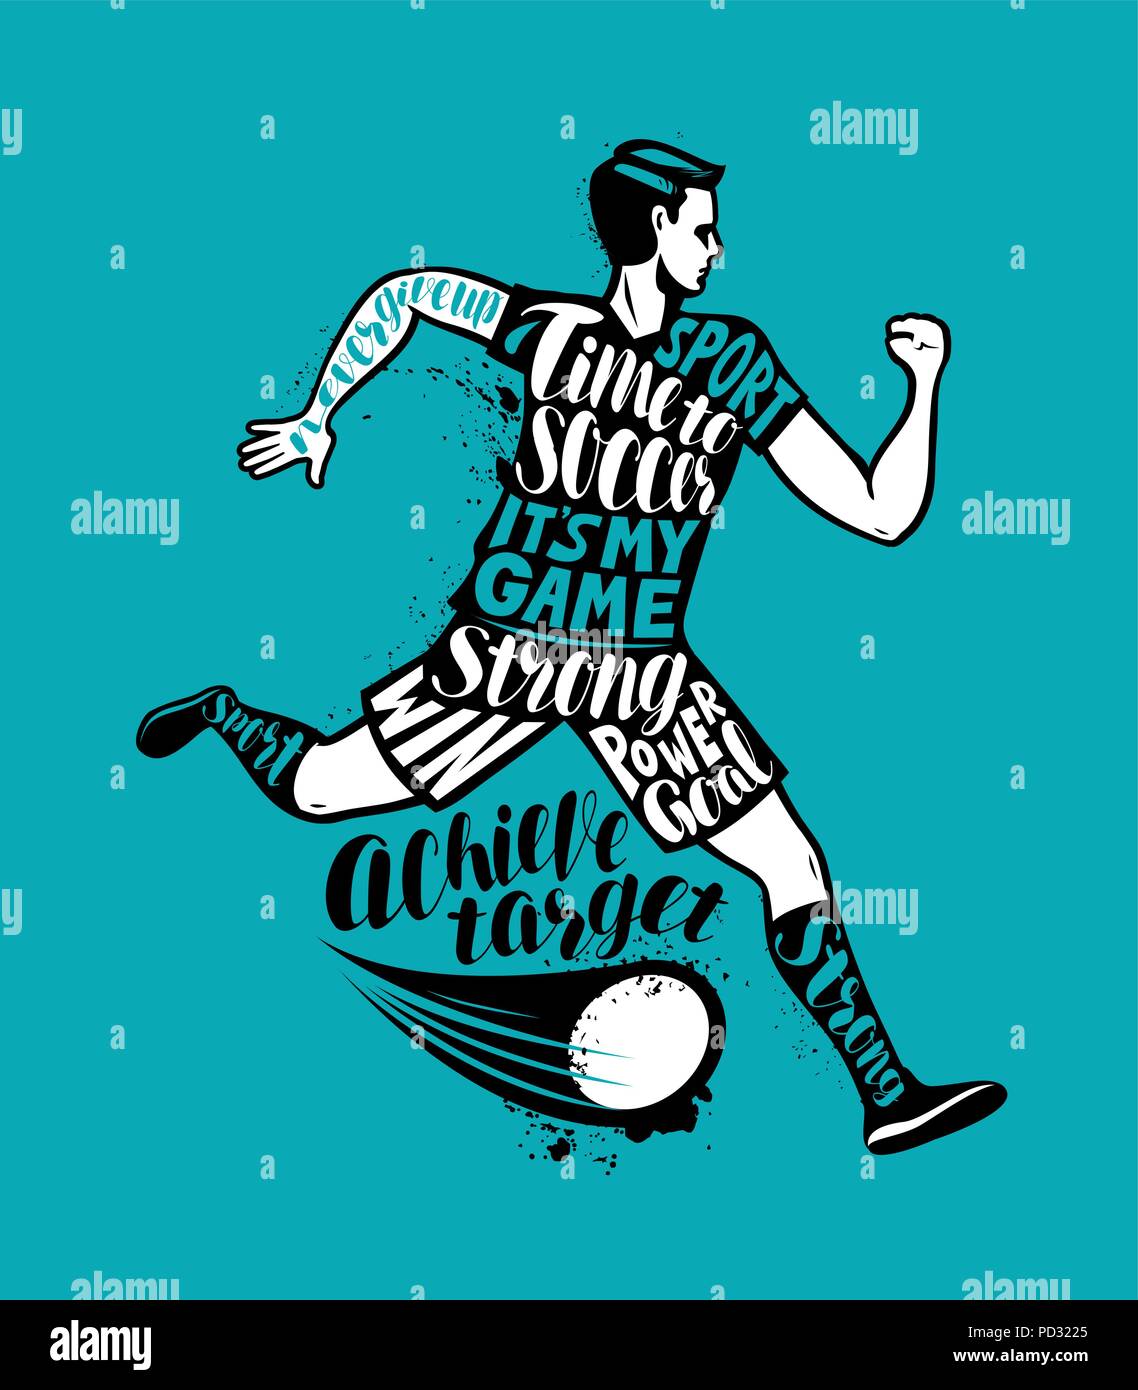 Fußball-Spieler läuft mit dem Ball. Sport Konzept. Typografische Gestaltung, Vector Illustration Stock Vektor